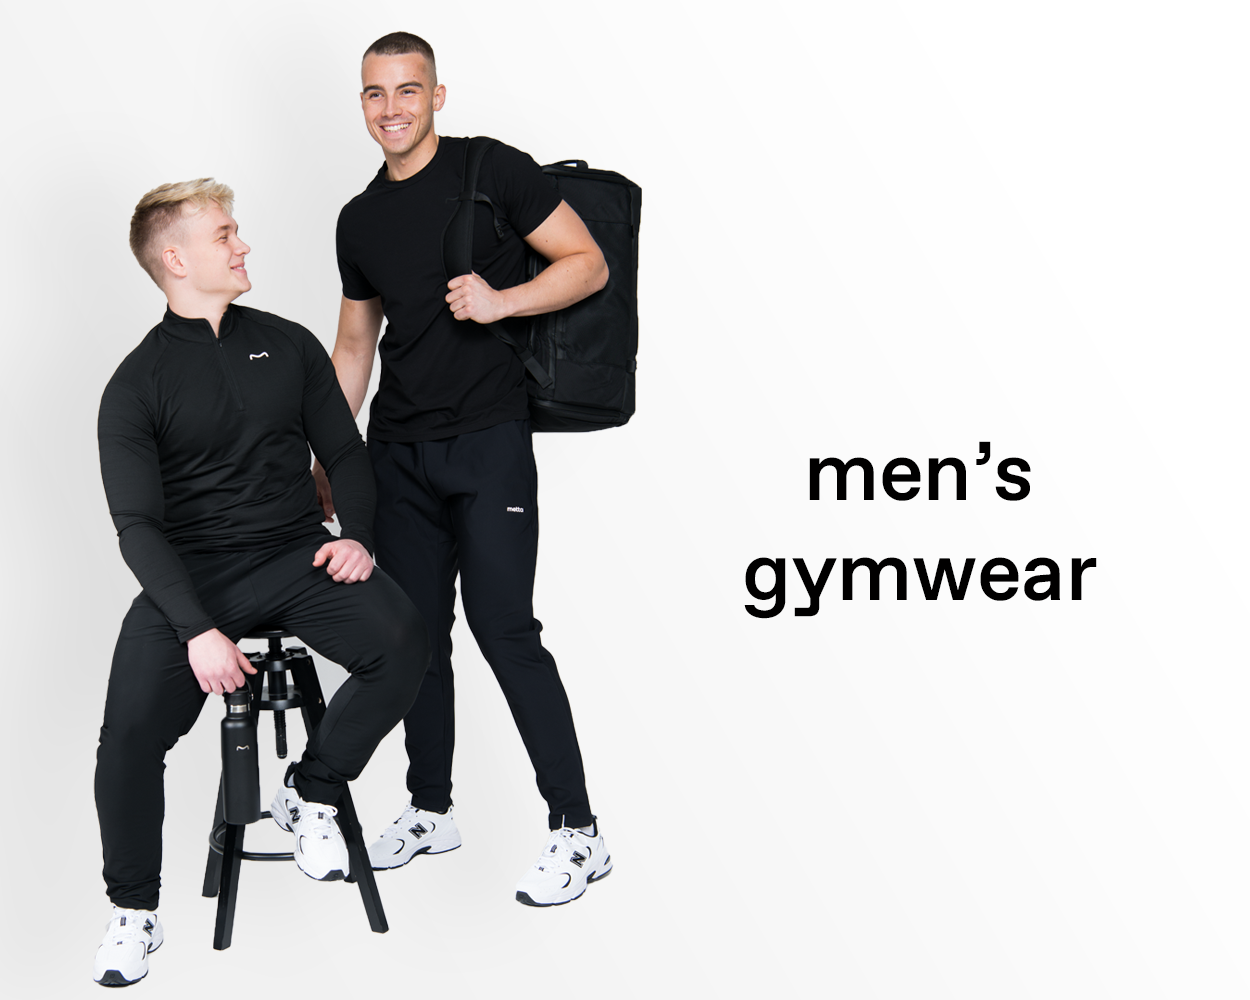 Men's Gymwear